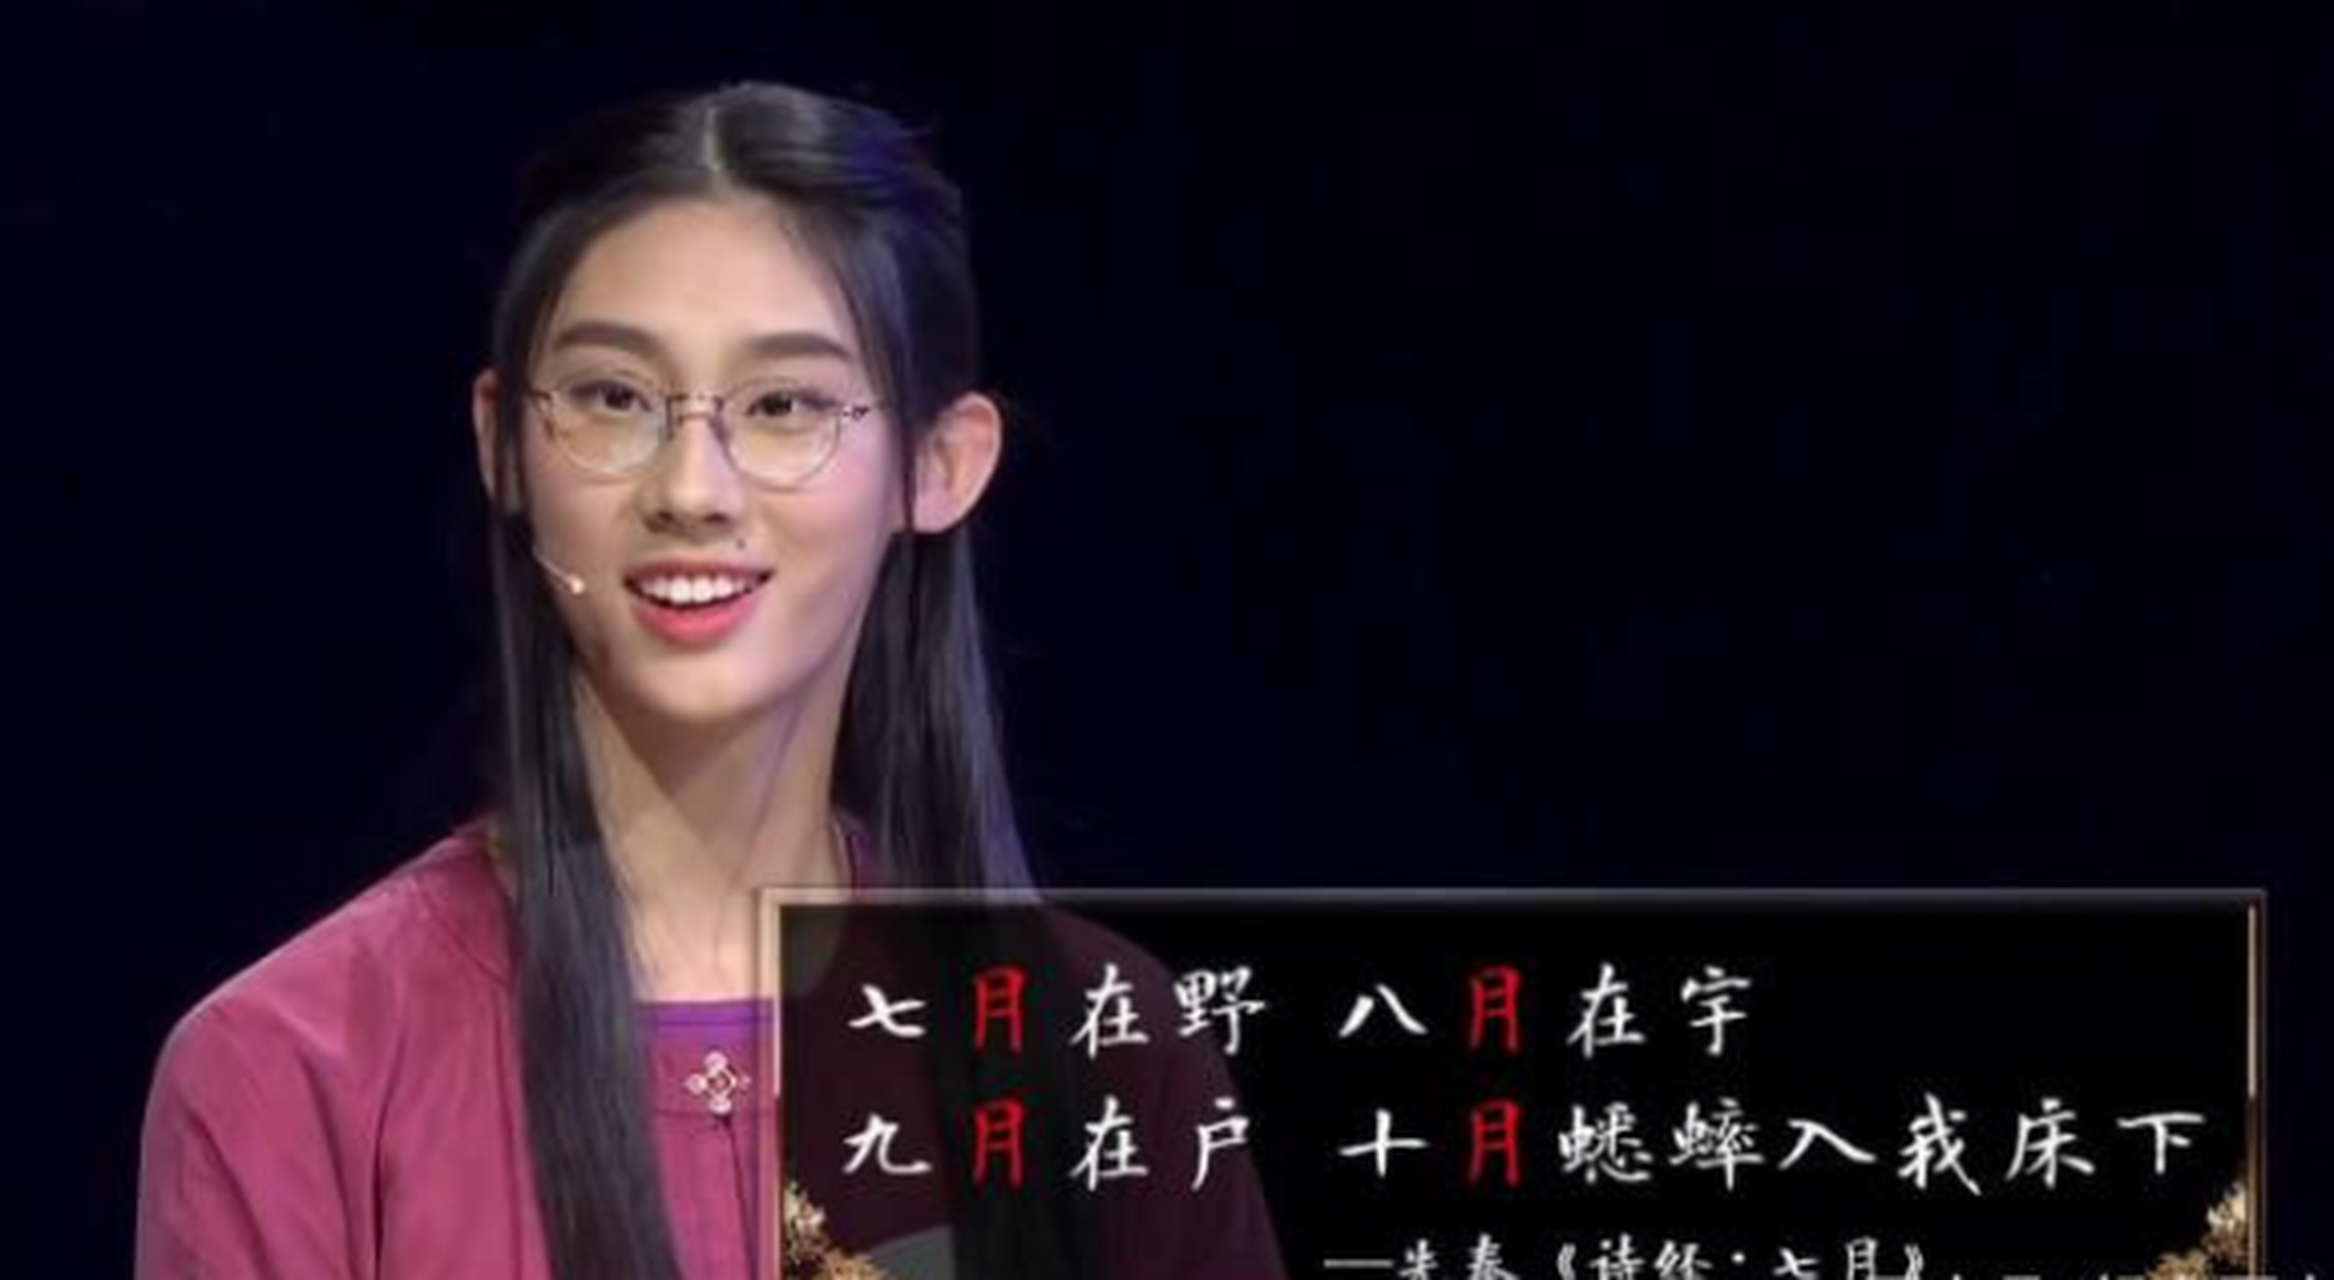 《中国诗词大会》冠军才女武亦姝的学习心得 2019年,背了2000多首诗